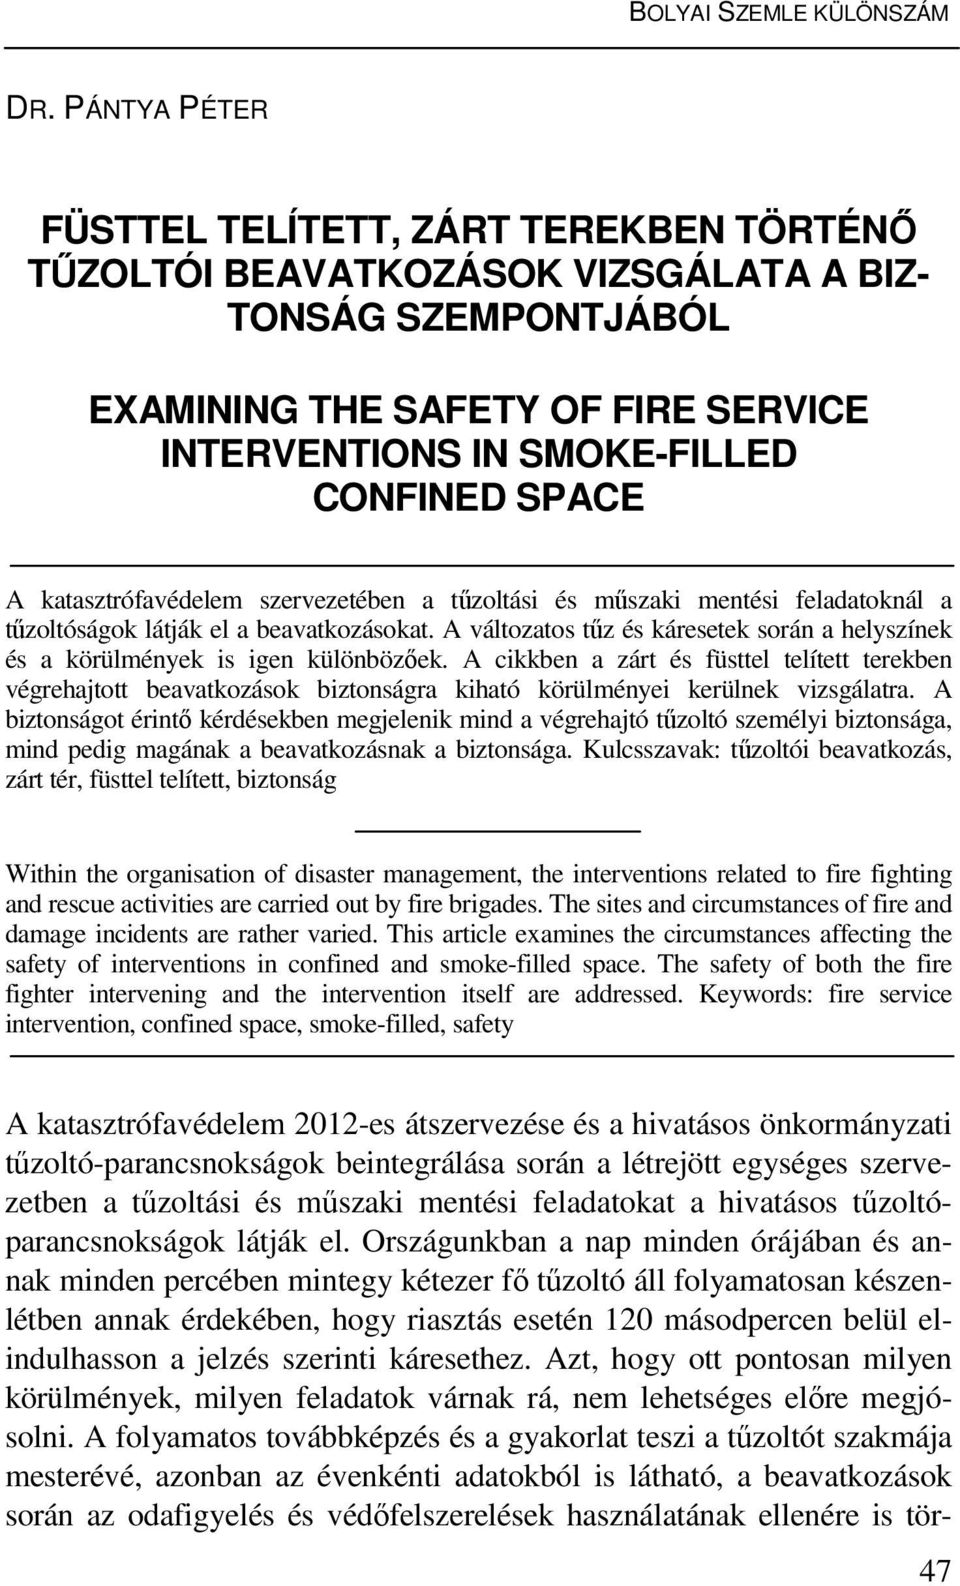 katasztrófavédelem szervezetében a tűzoltási és műszaki mentési feladatoknál a tűzoltóságok látják el a beavatkozásokat.